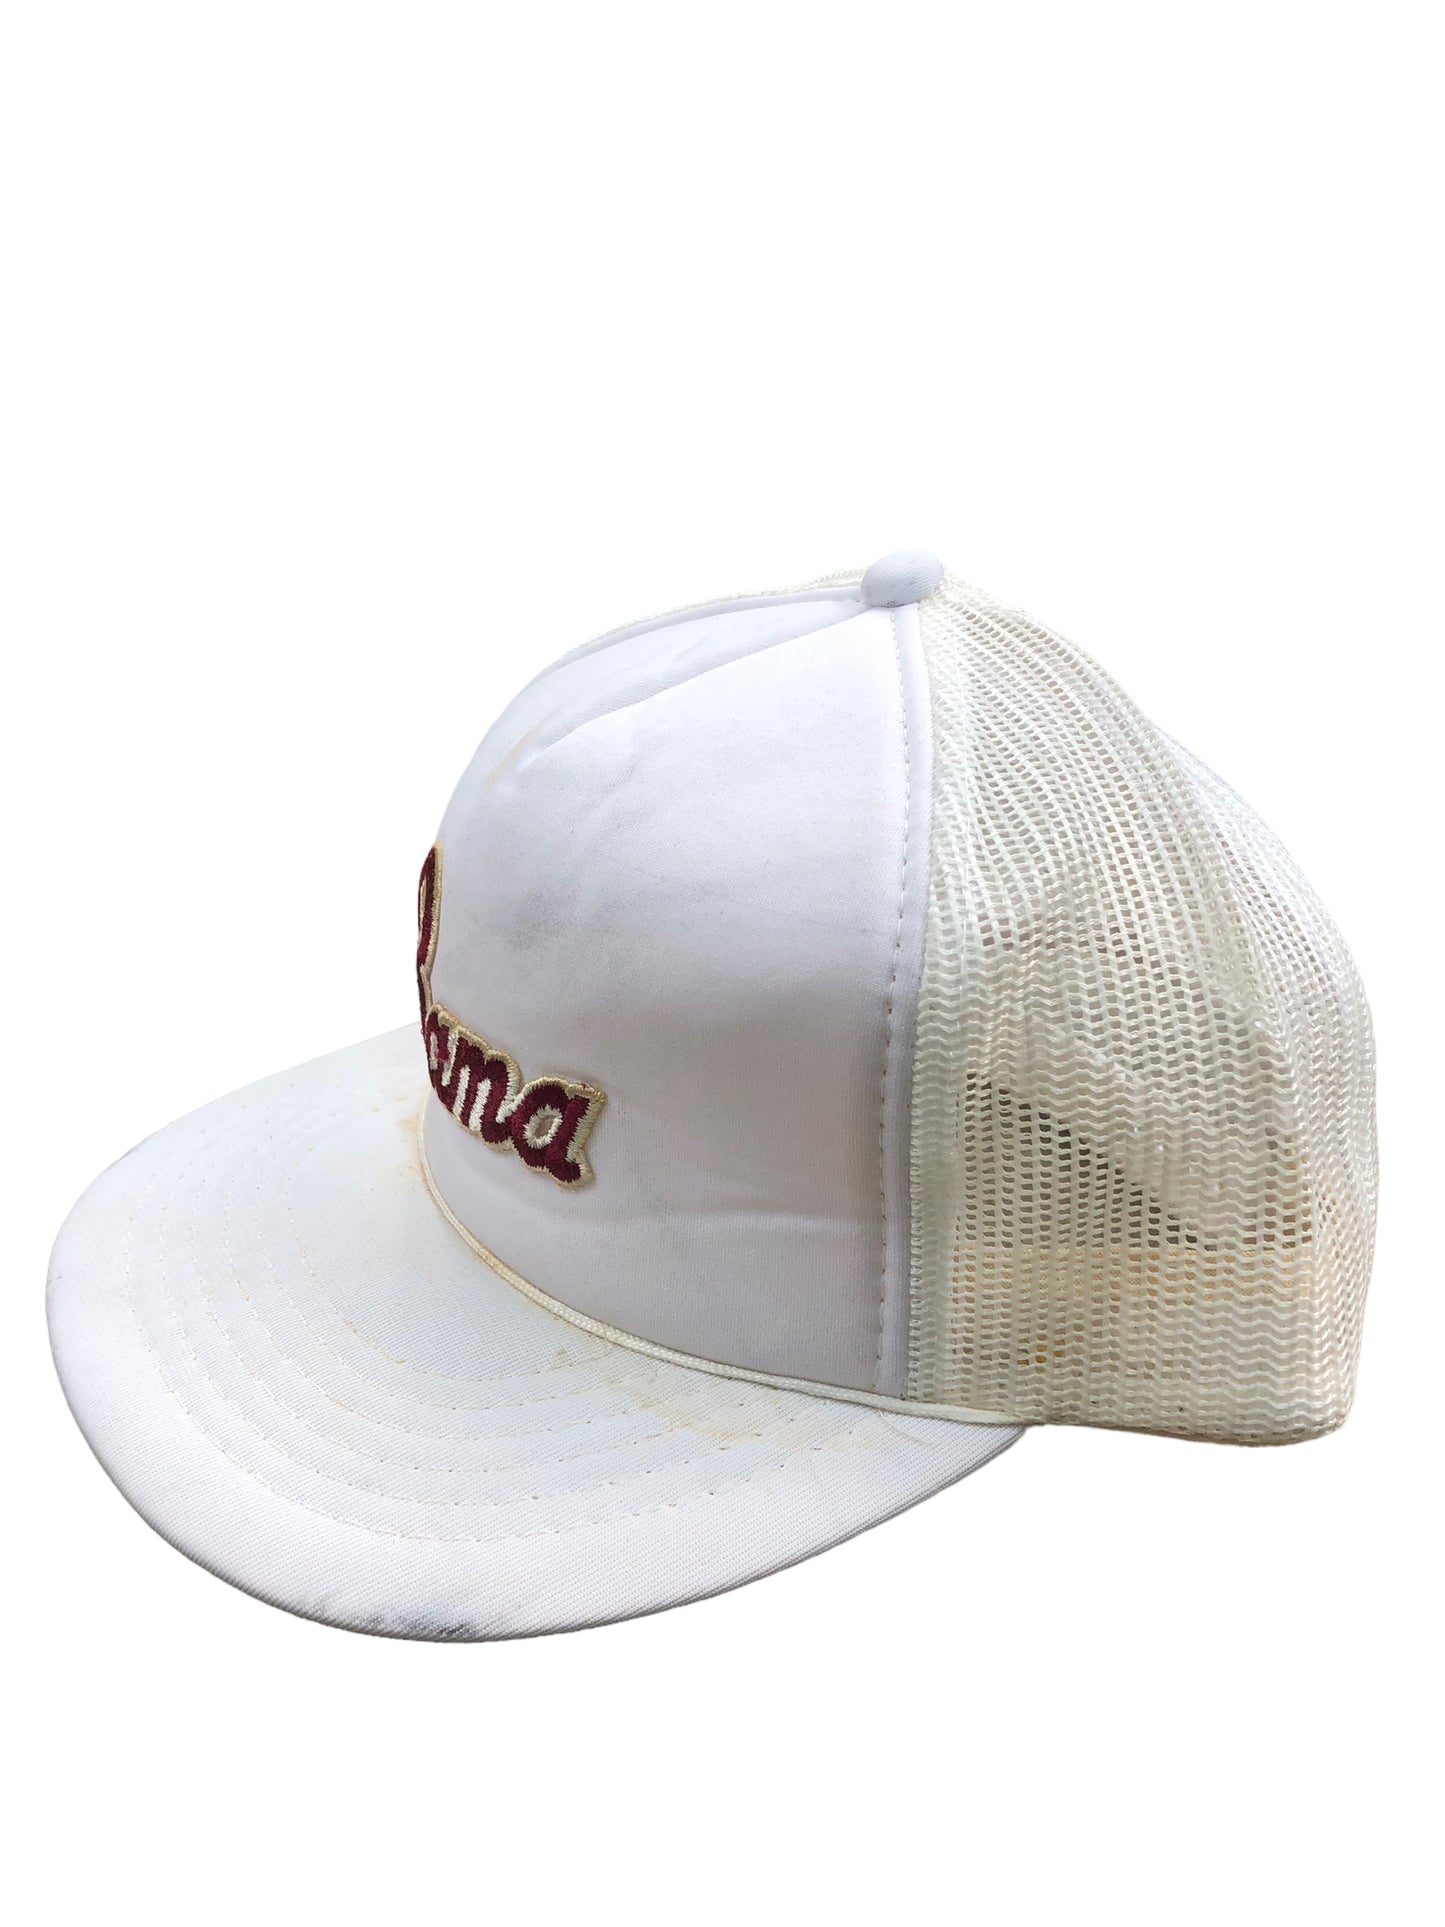 VTG White Bama Trucker Hat